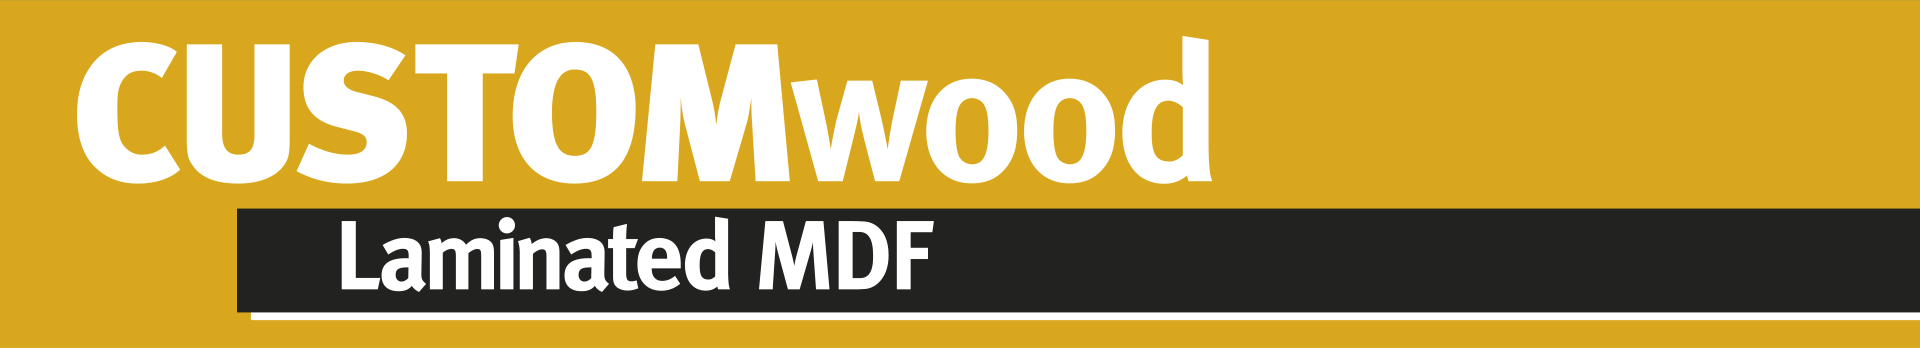 CUSTOMwood Laminated MDF